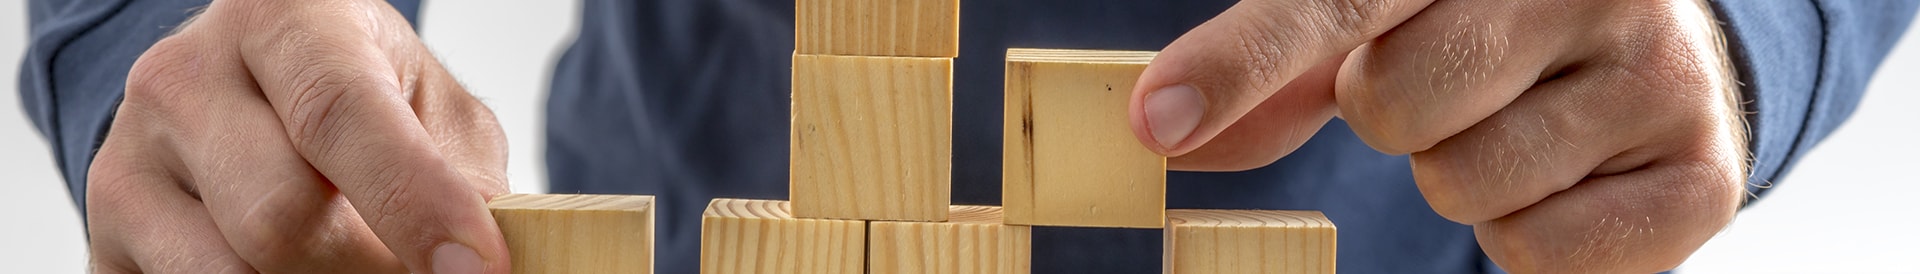 wooden building blocks